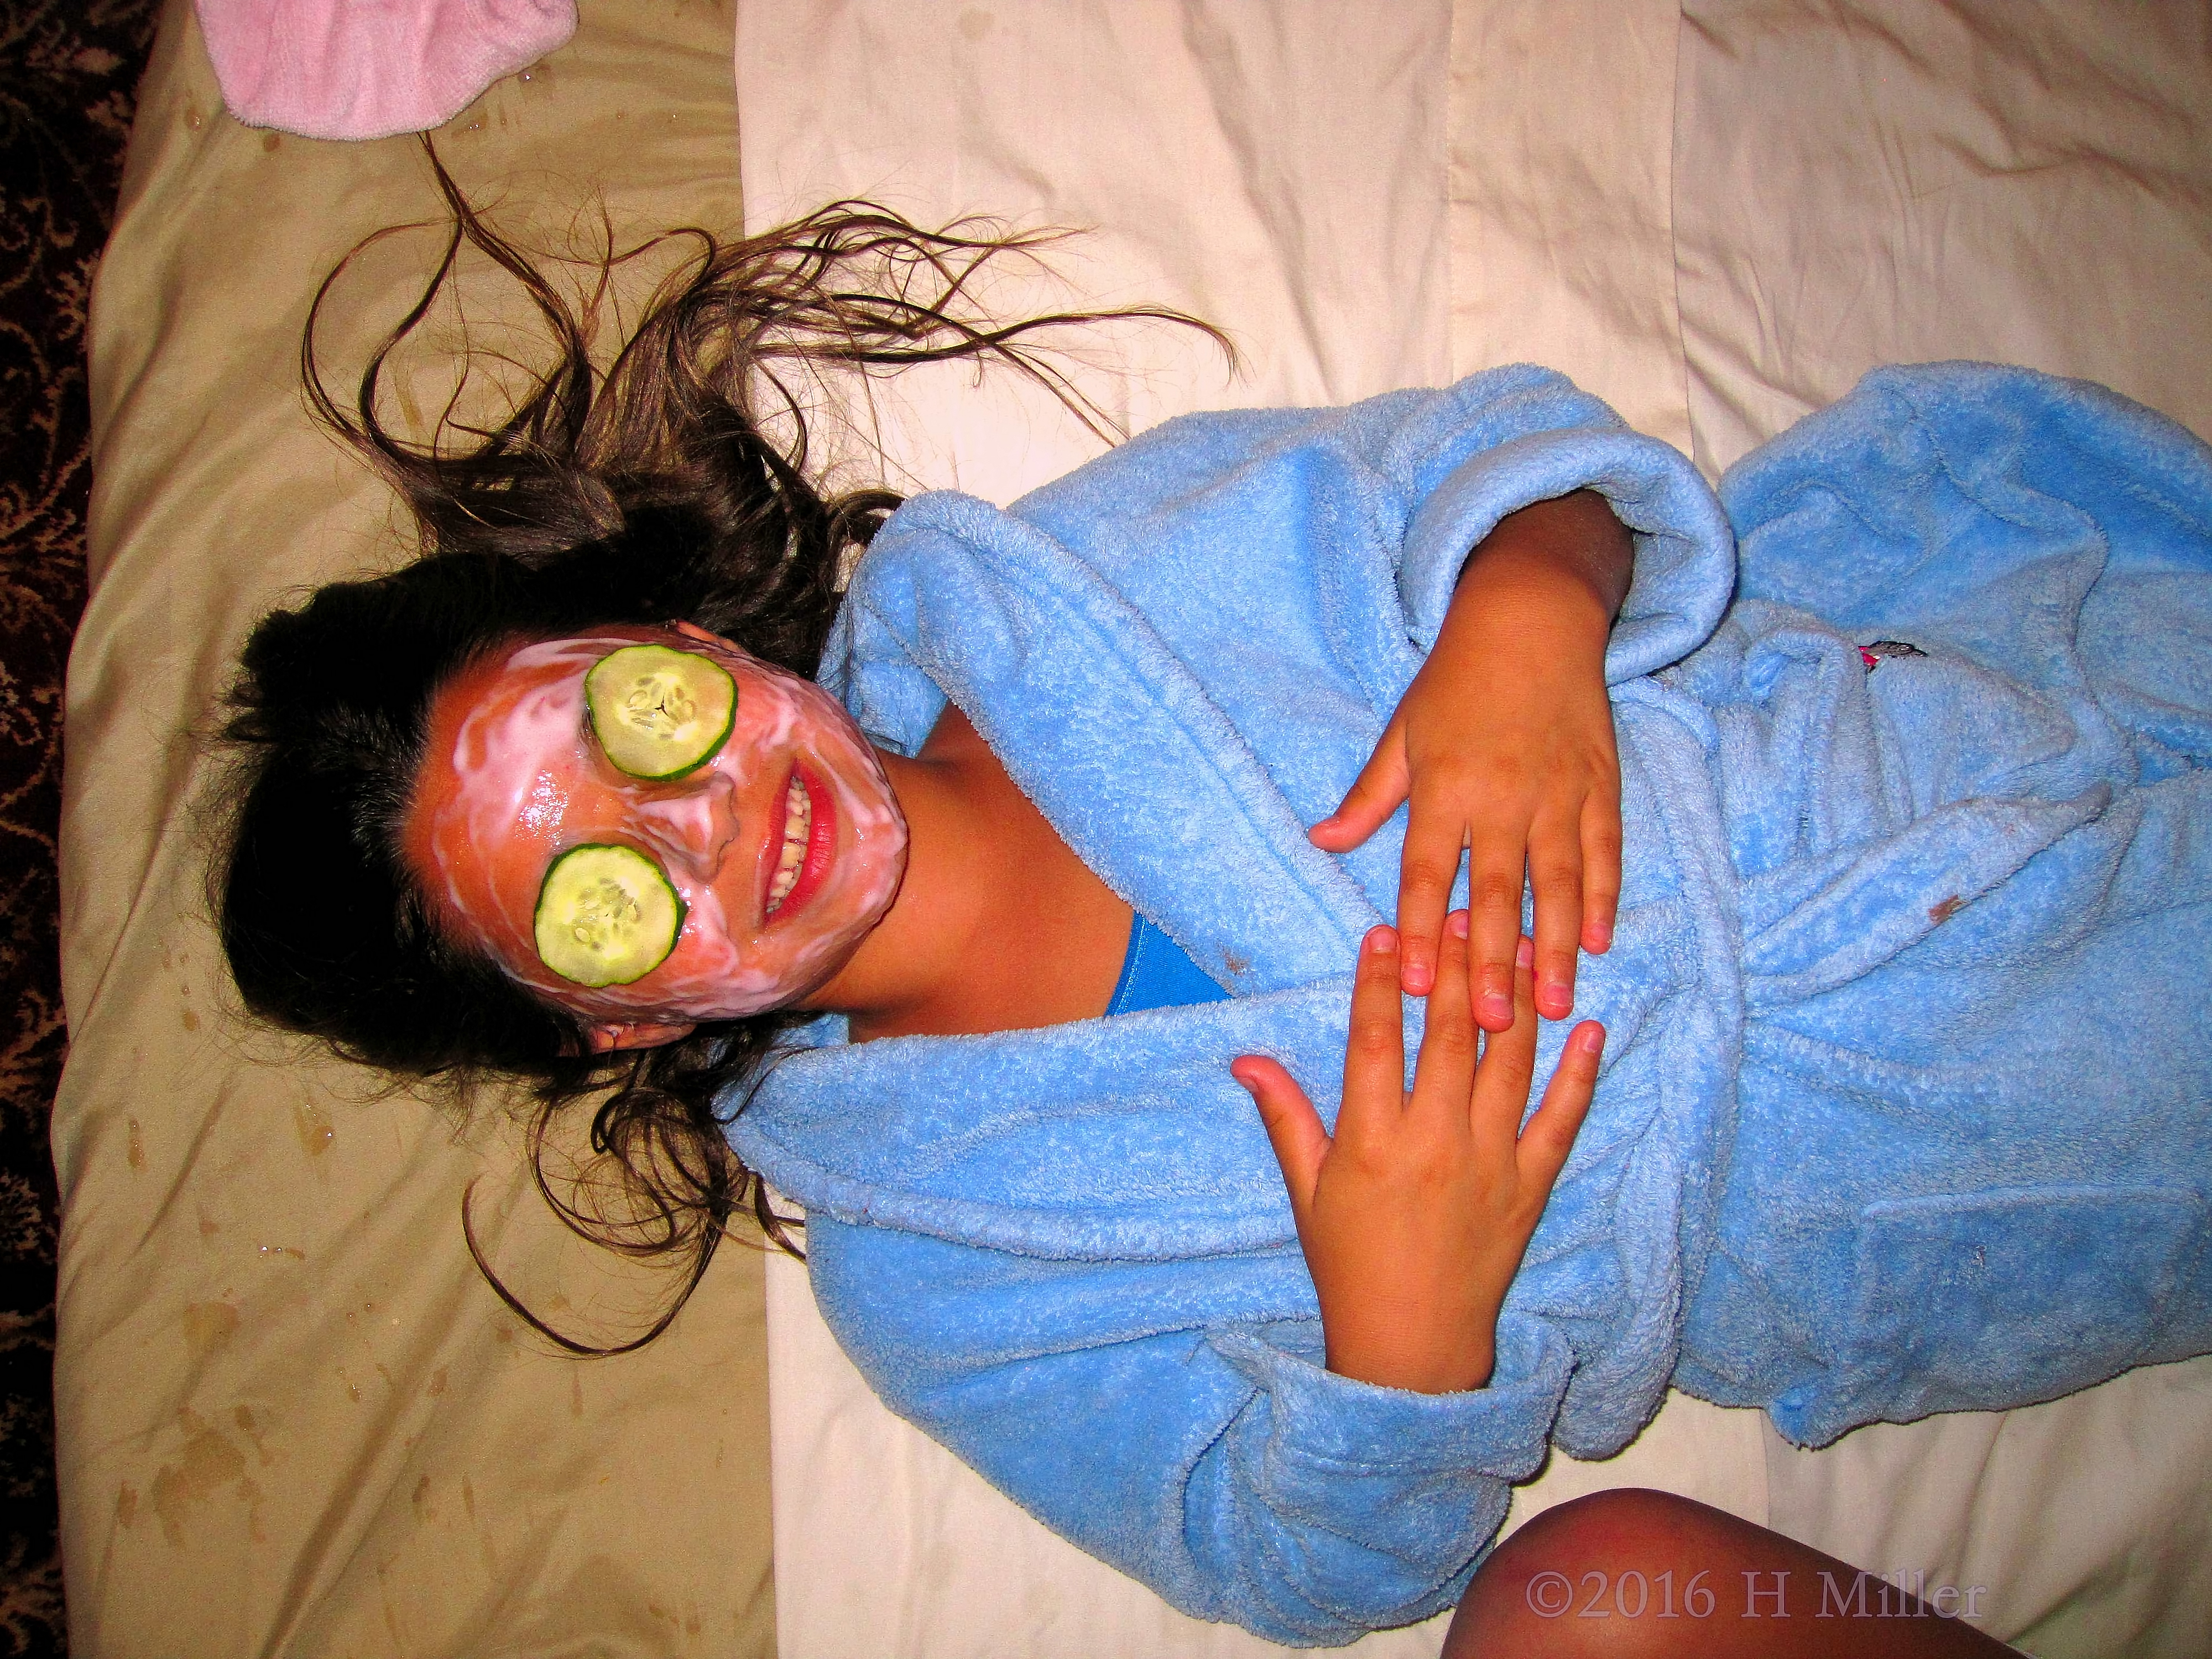 She's Loving Her Homemade Strawberry Face Mask.